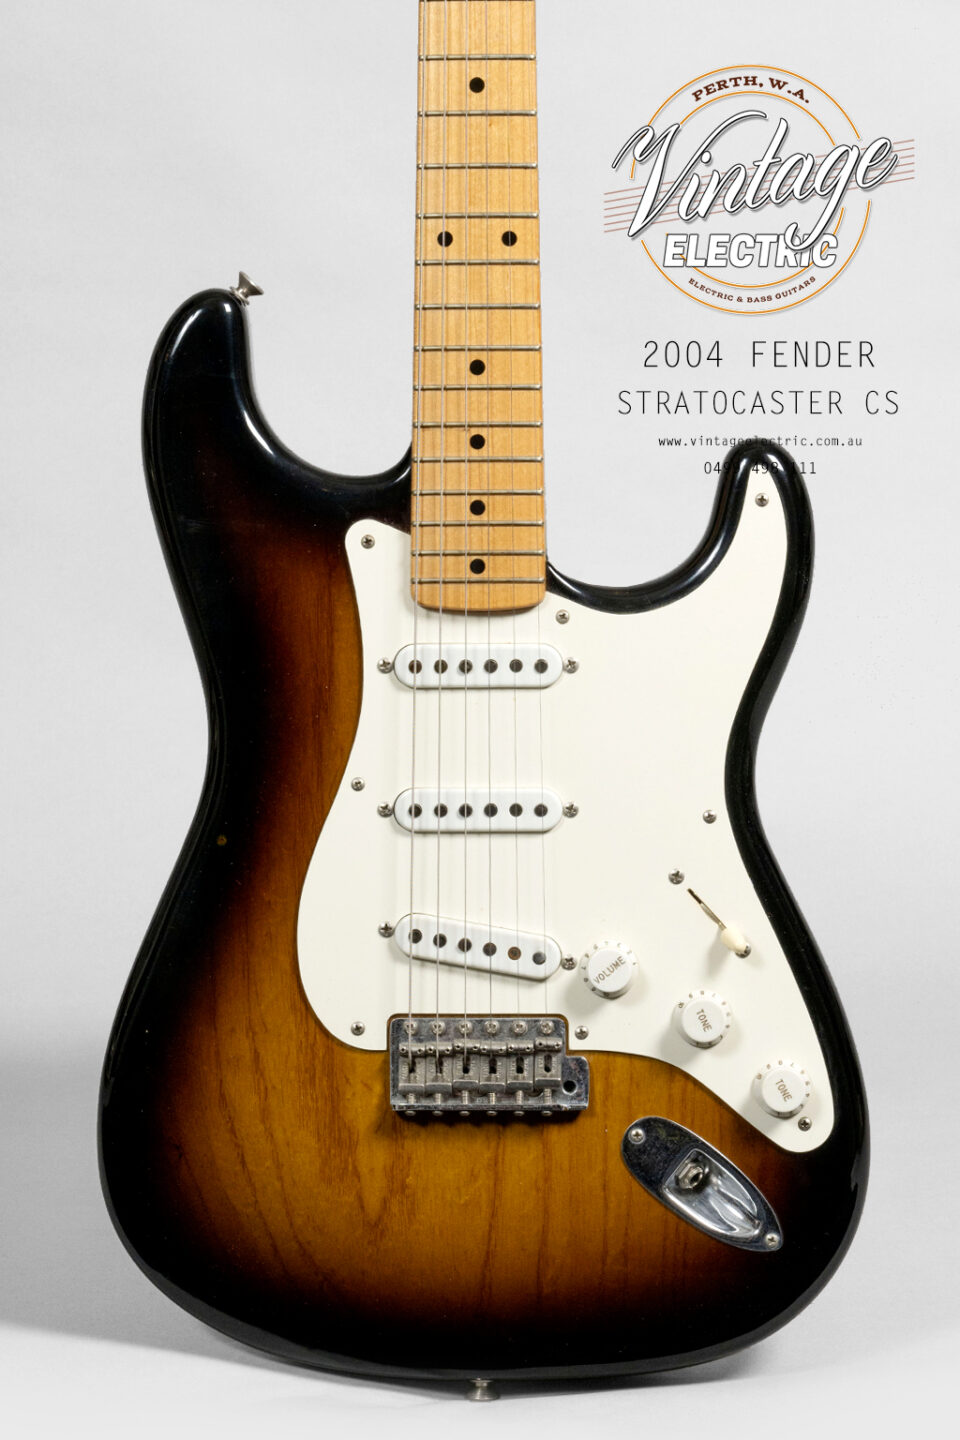 2004 Fender Stratocaster CS Body